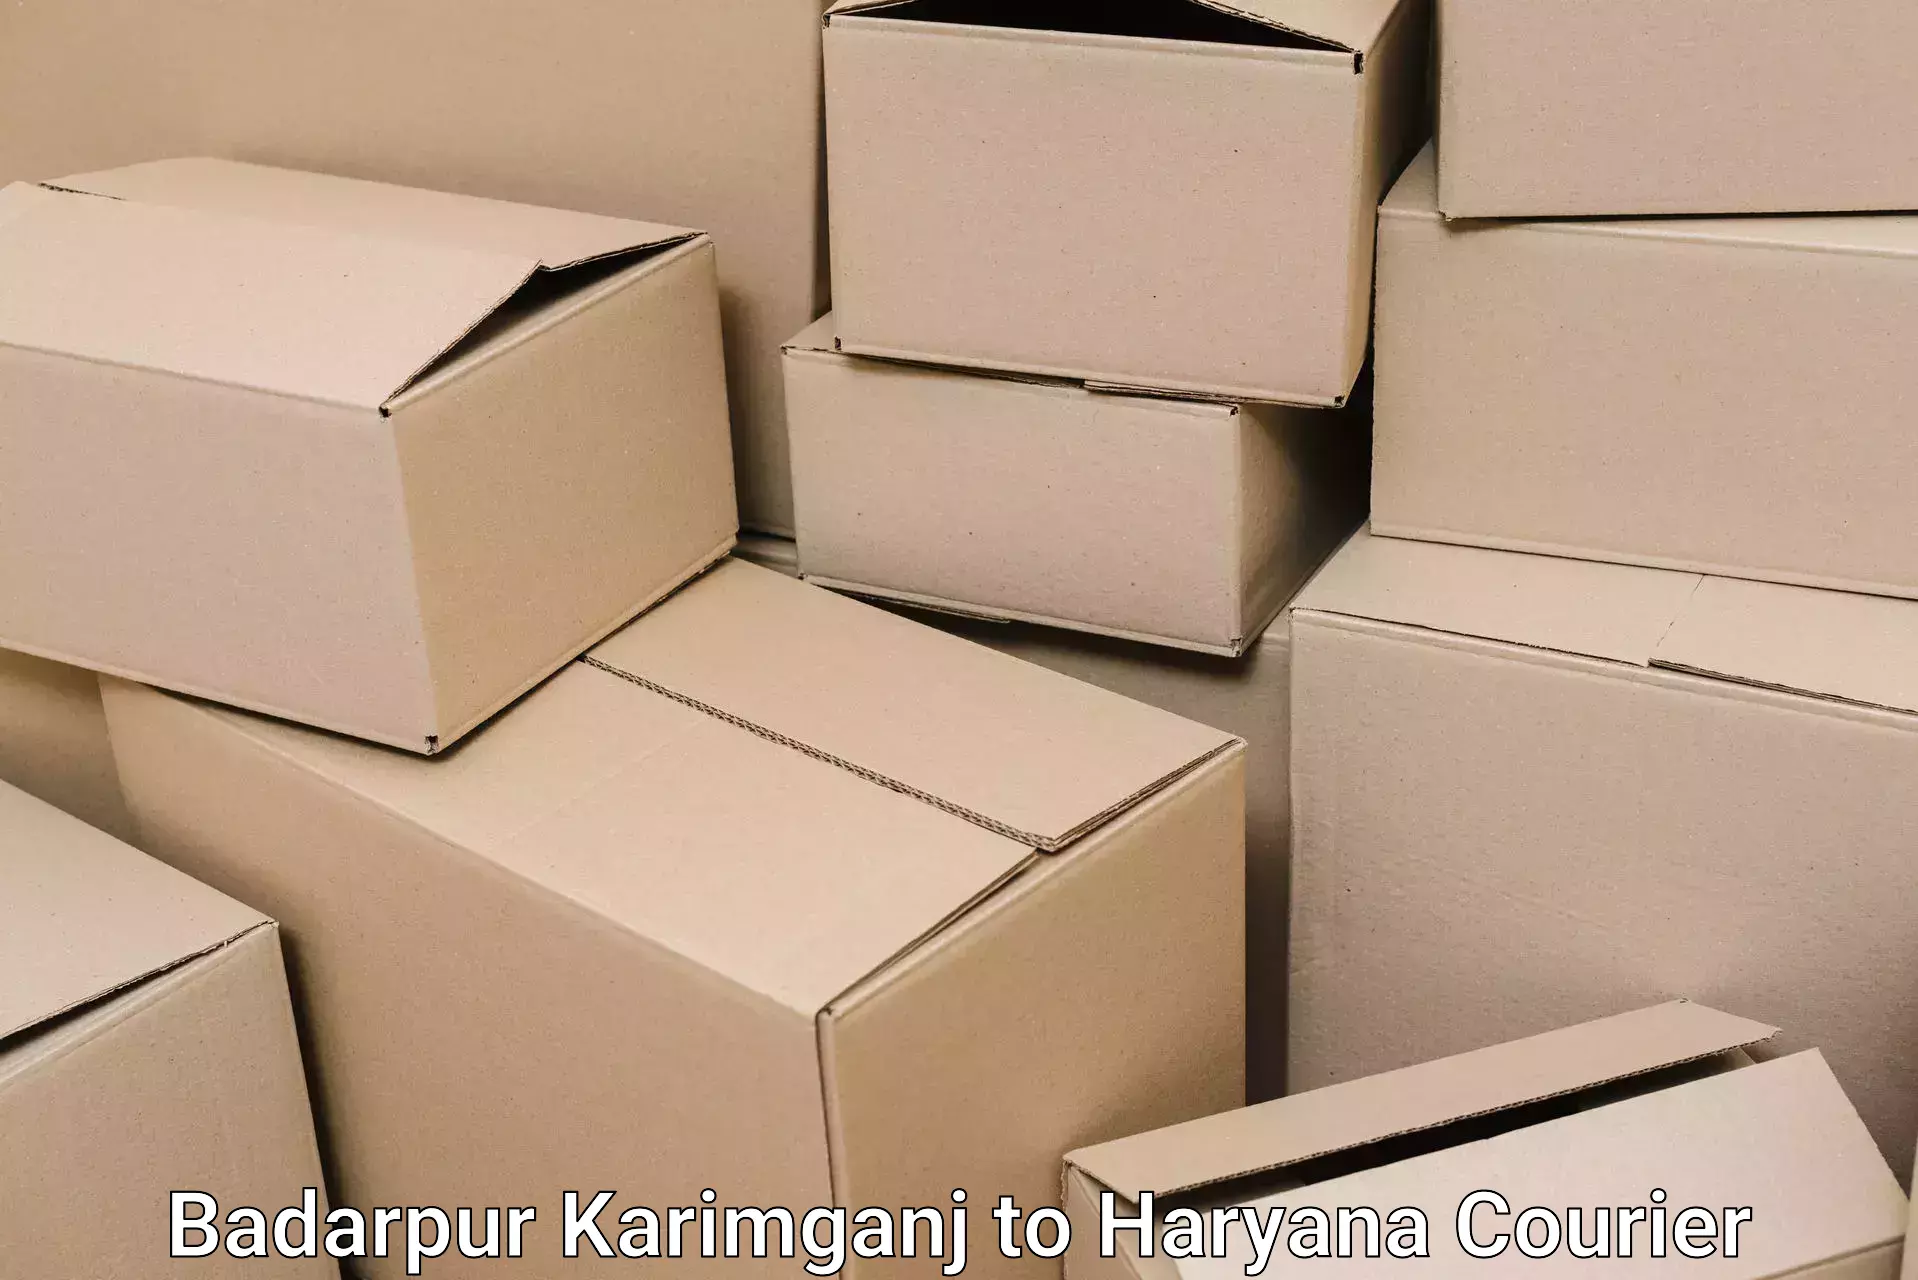 Furniture moving service Badarpur Karimganj to Ambala